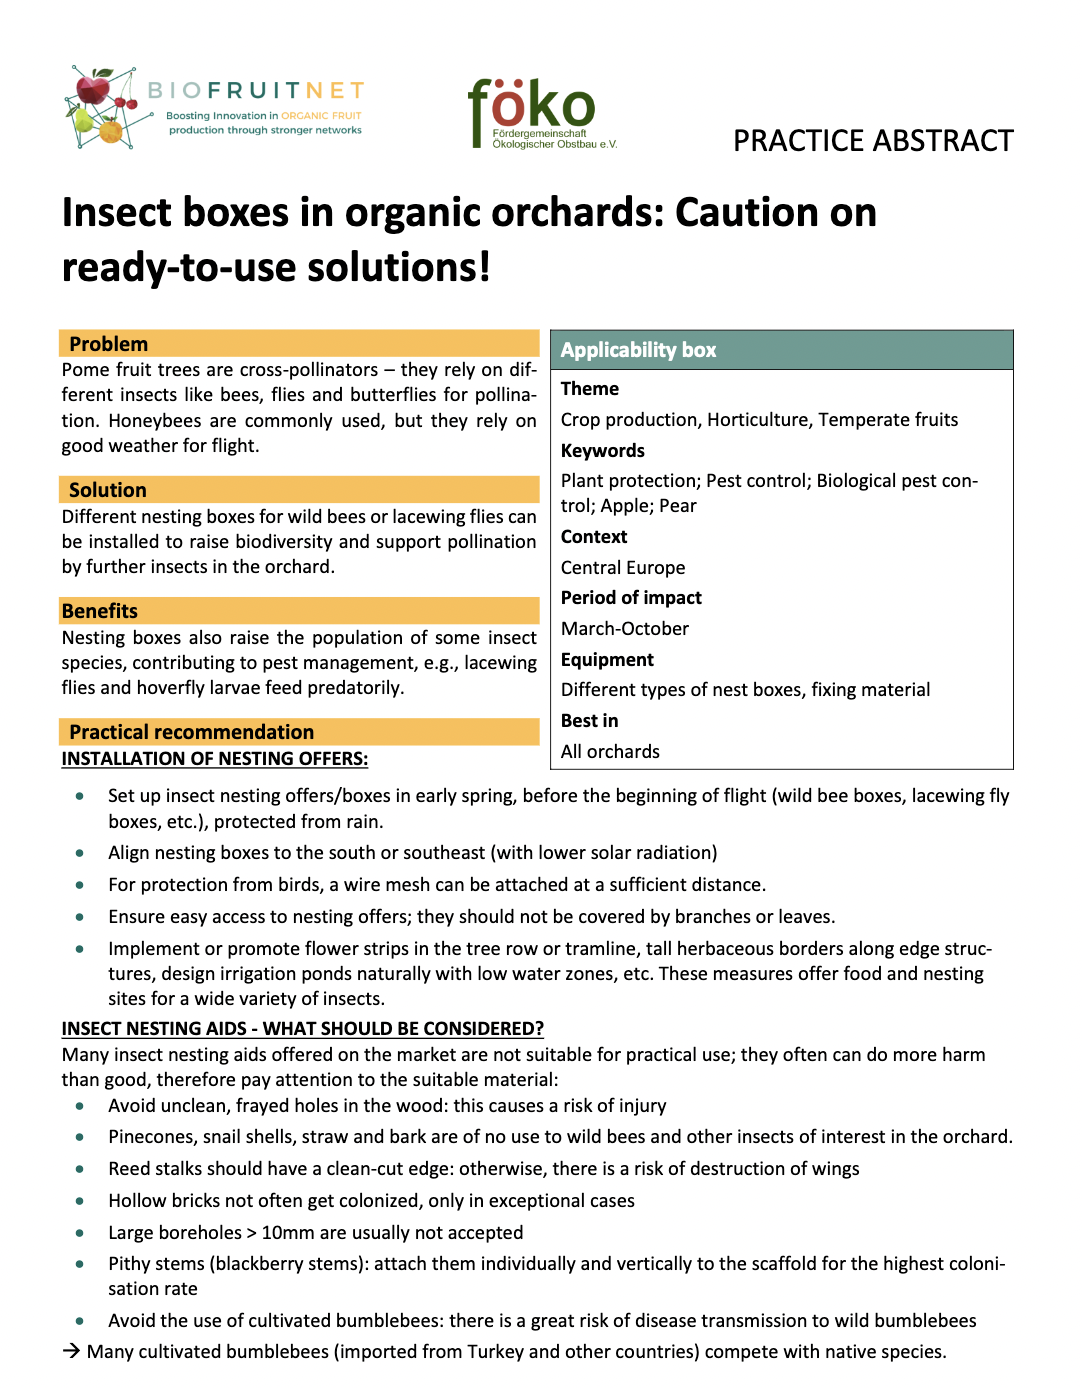 Κουτιά εντόμων σε βιολογικούς οπωρώνες: Προσοχή σε έτοιμα προς χρήση διαλύματα! (Περίληψη πρακτικής BIOFRUITNET)